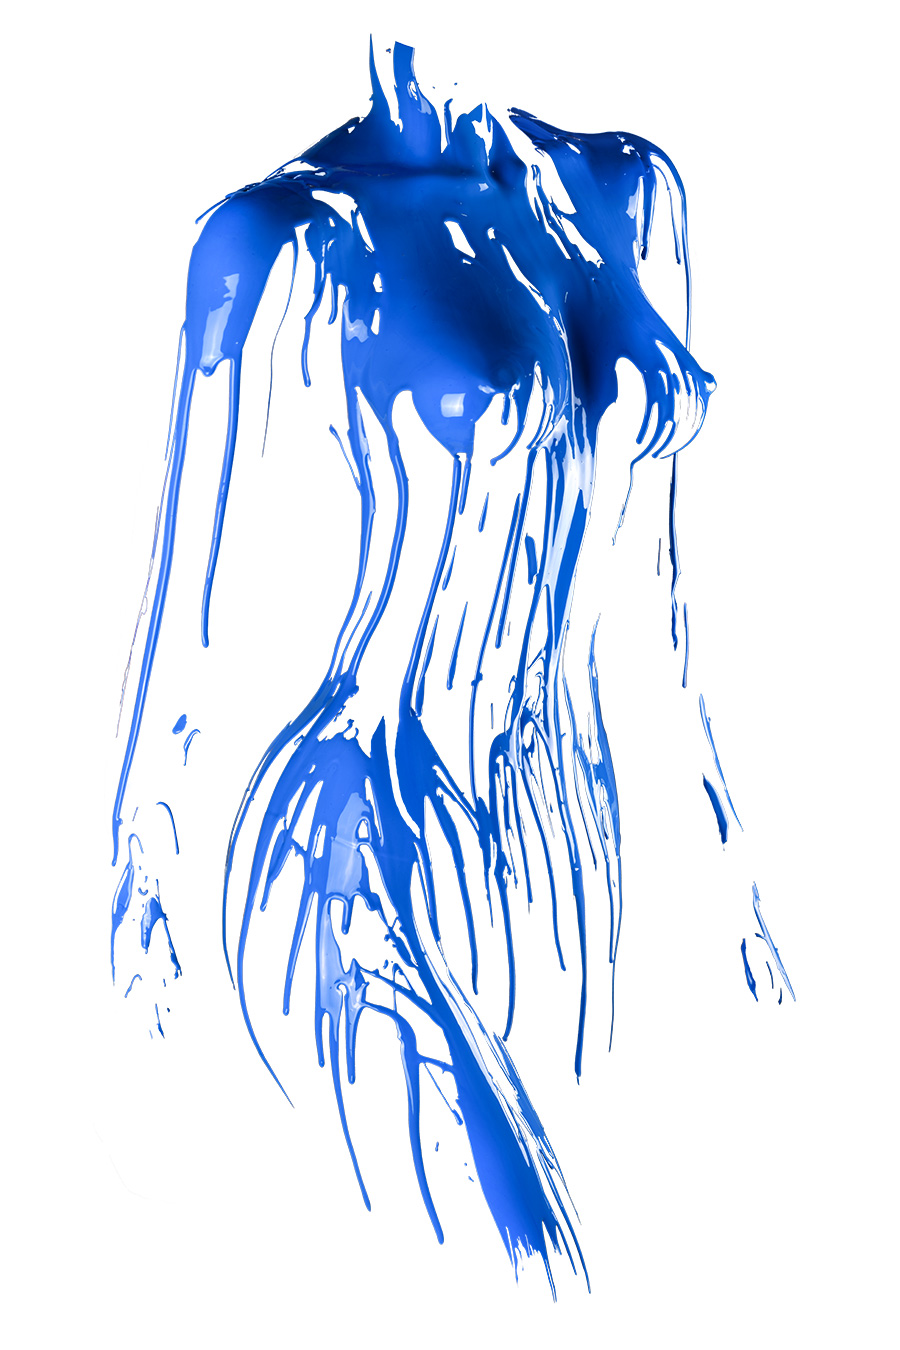 Silhouette - abstrake erotische Fotokunst Frau weiblich Farben blau weiß Wandbild Kunstdruck Galerie Ausstellung